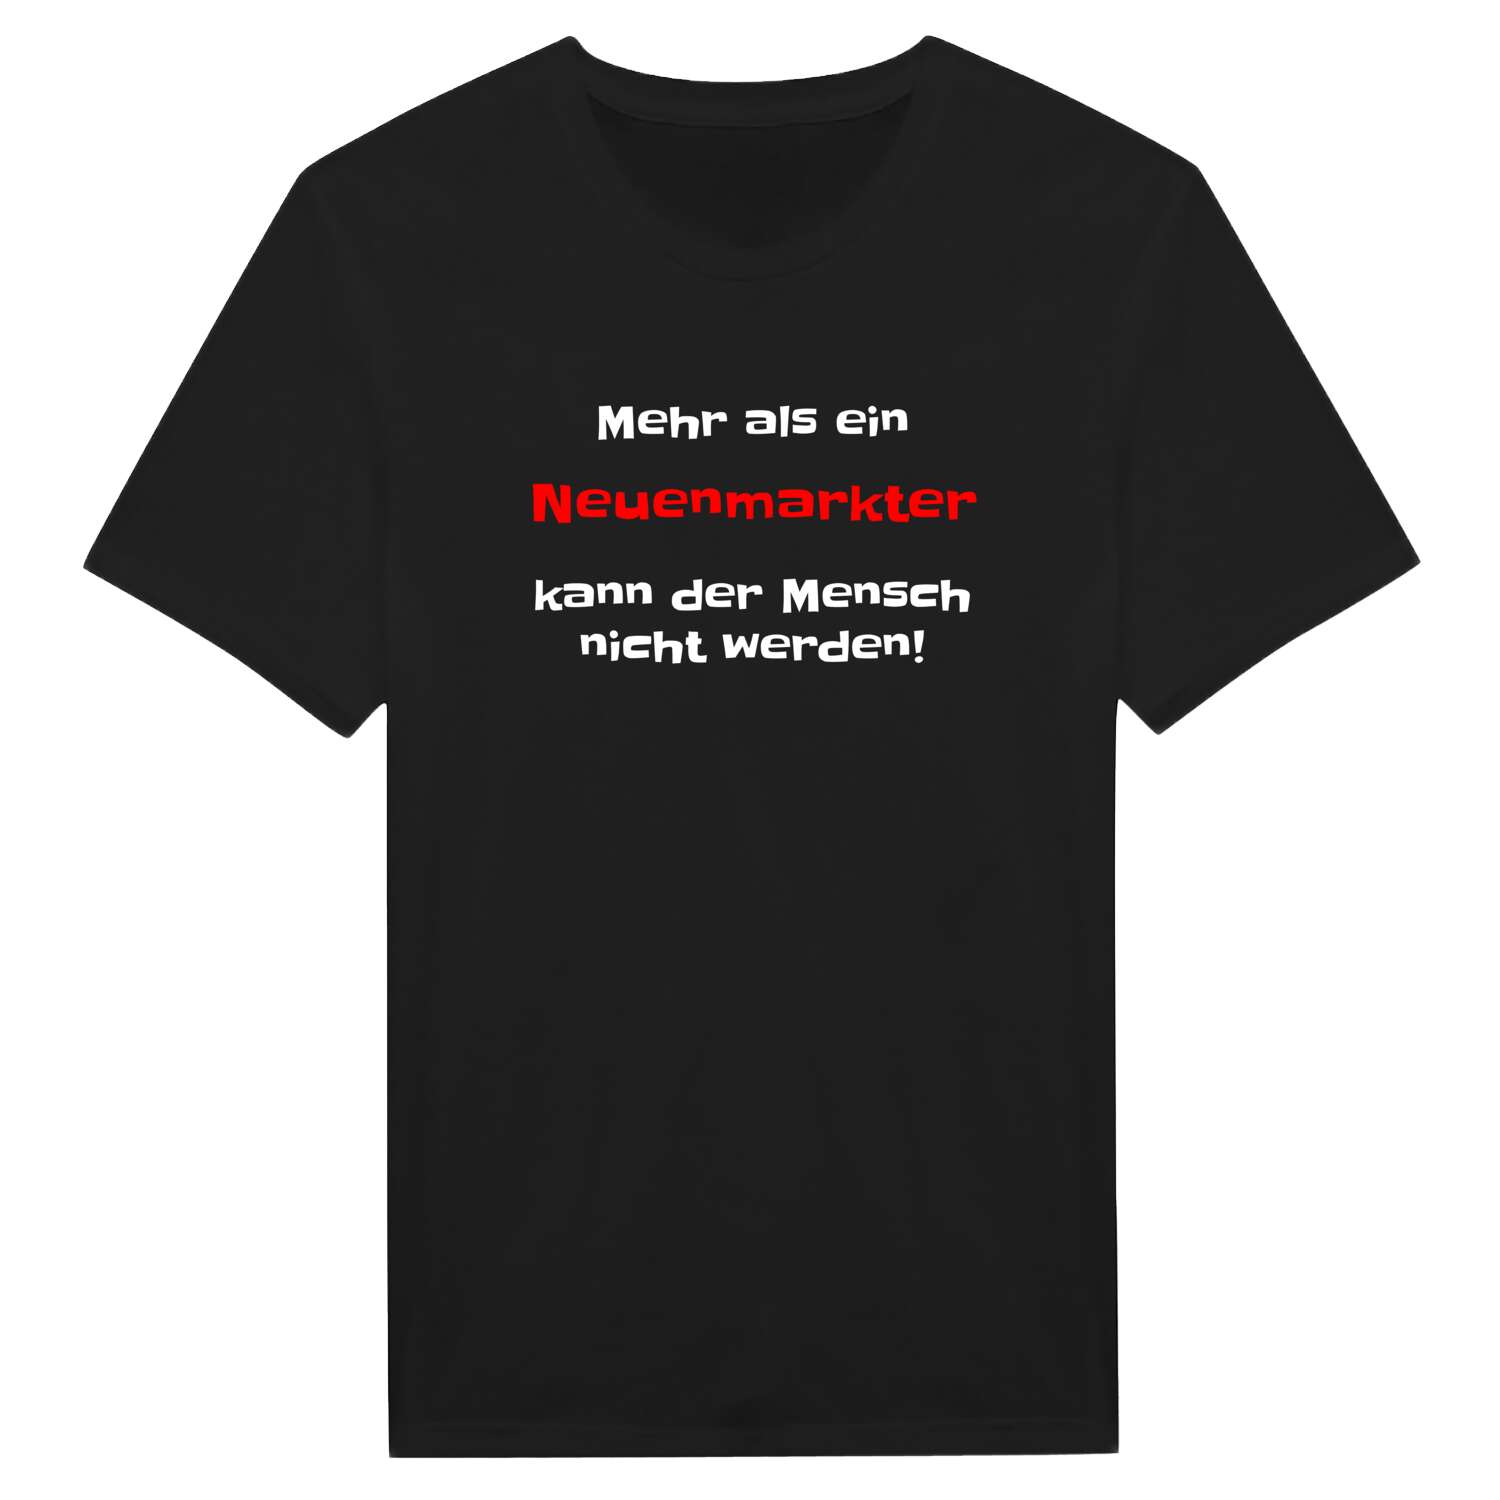 Neuenmarkt T-Shirt »Mehr als ein«